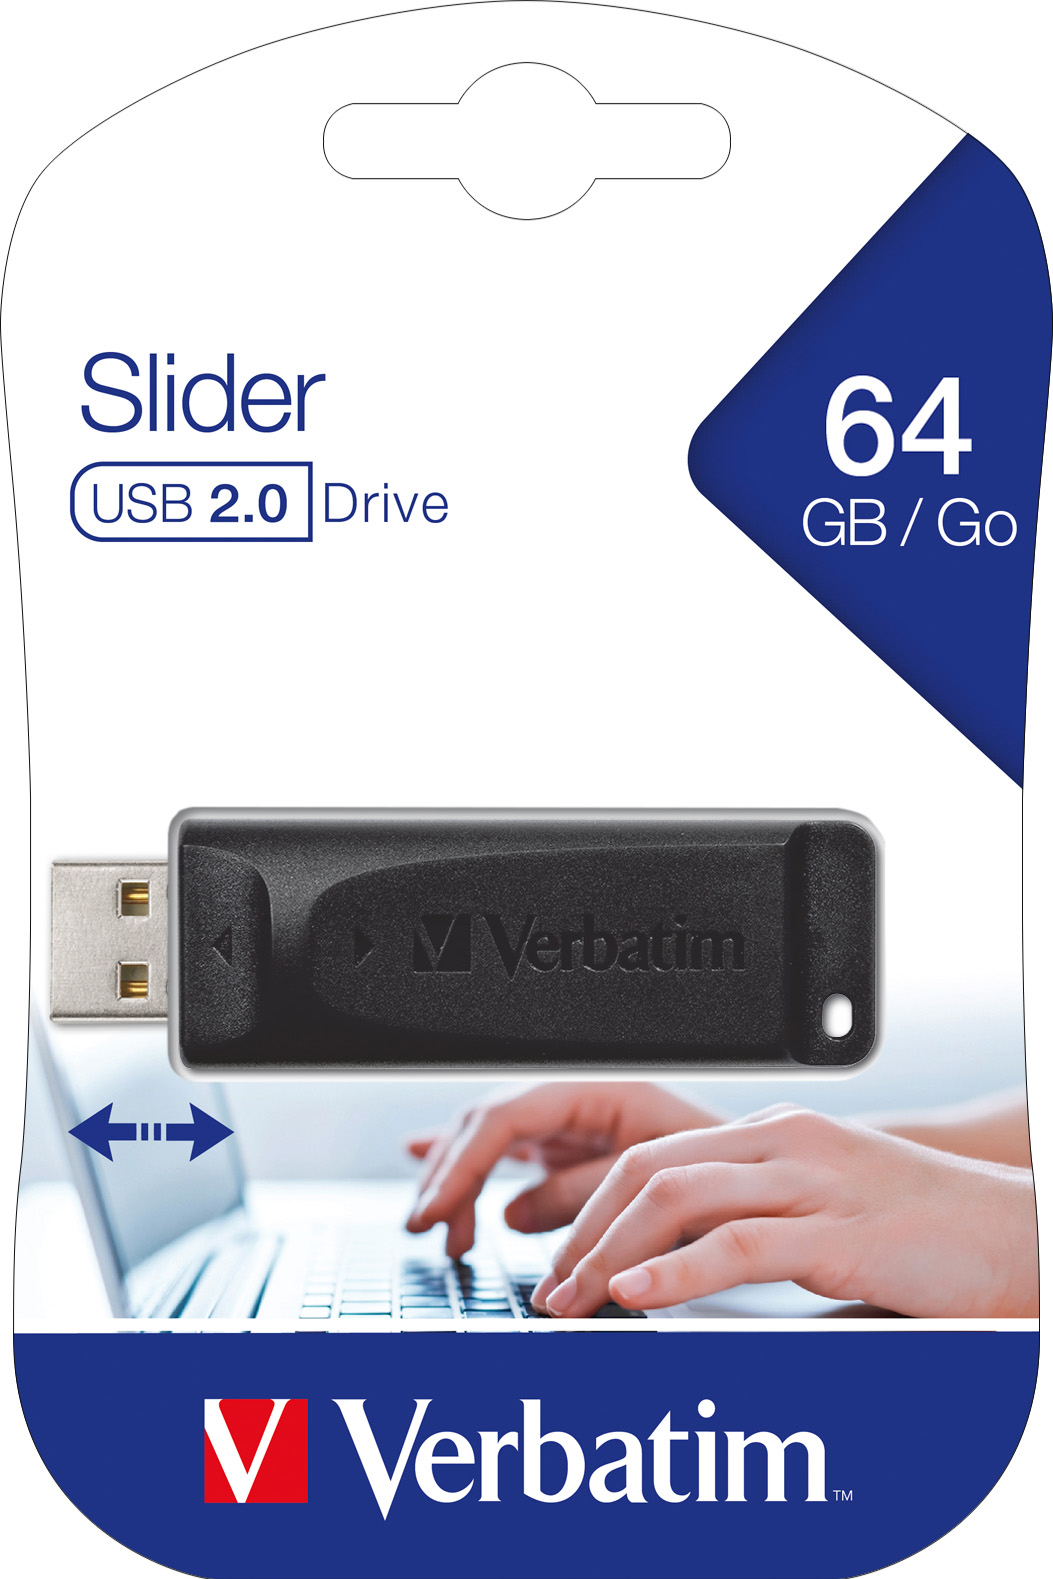 Verbatim USB 2.0 Stick 64GB, Slider (R) 10MB/s, (W) 4MB/s, Retail-Blister